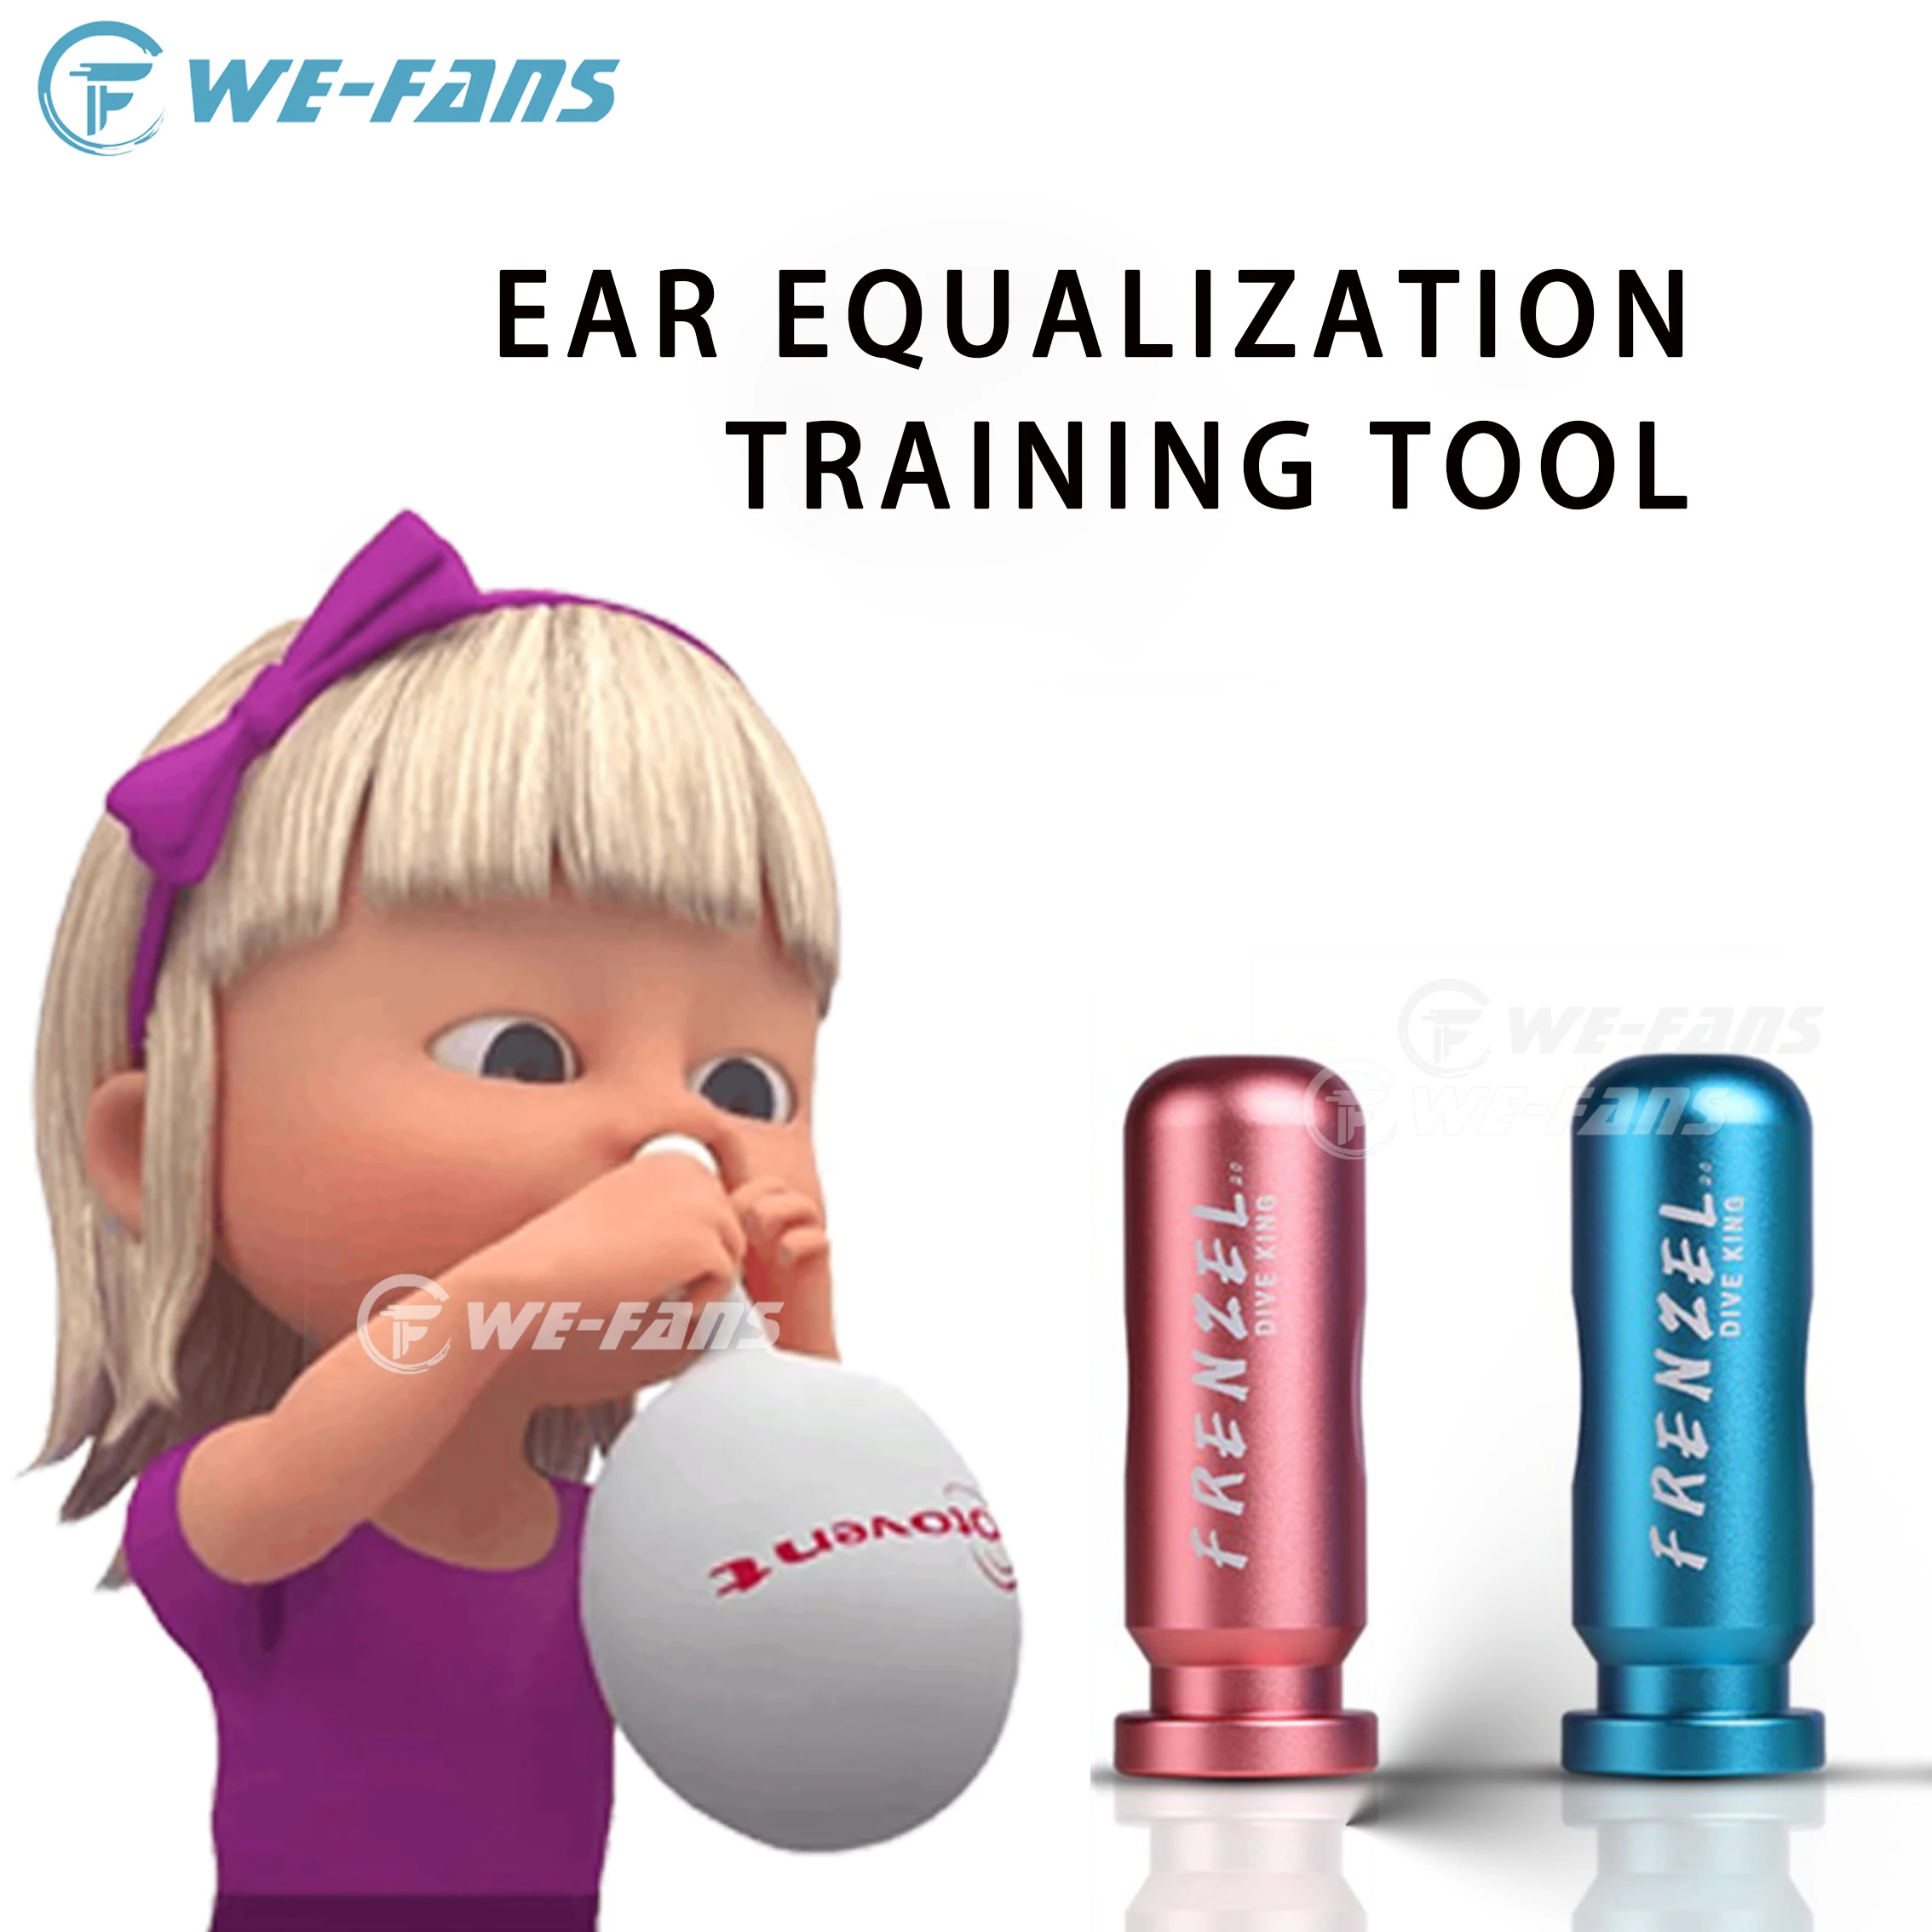 Frenzel-herramienta de entrenamiento de ecualización del oído bajo el agua, equilibrio de presión del oído, práctica de buceo, herramienta de esnórquel profesional